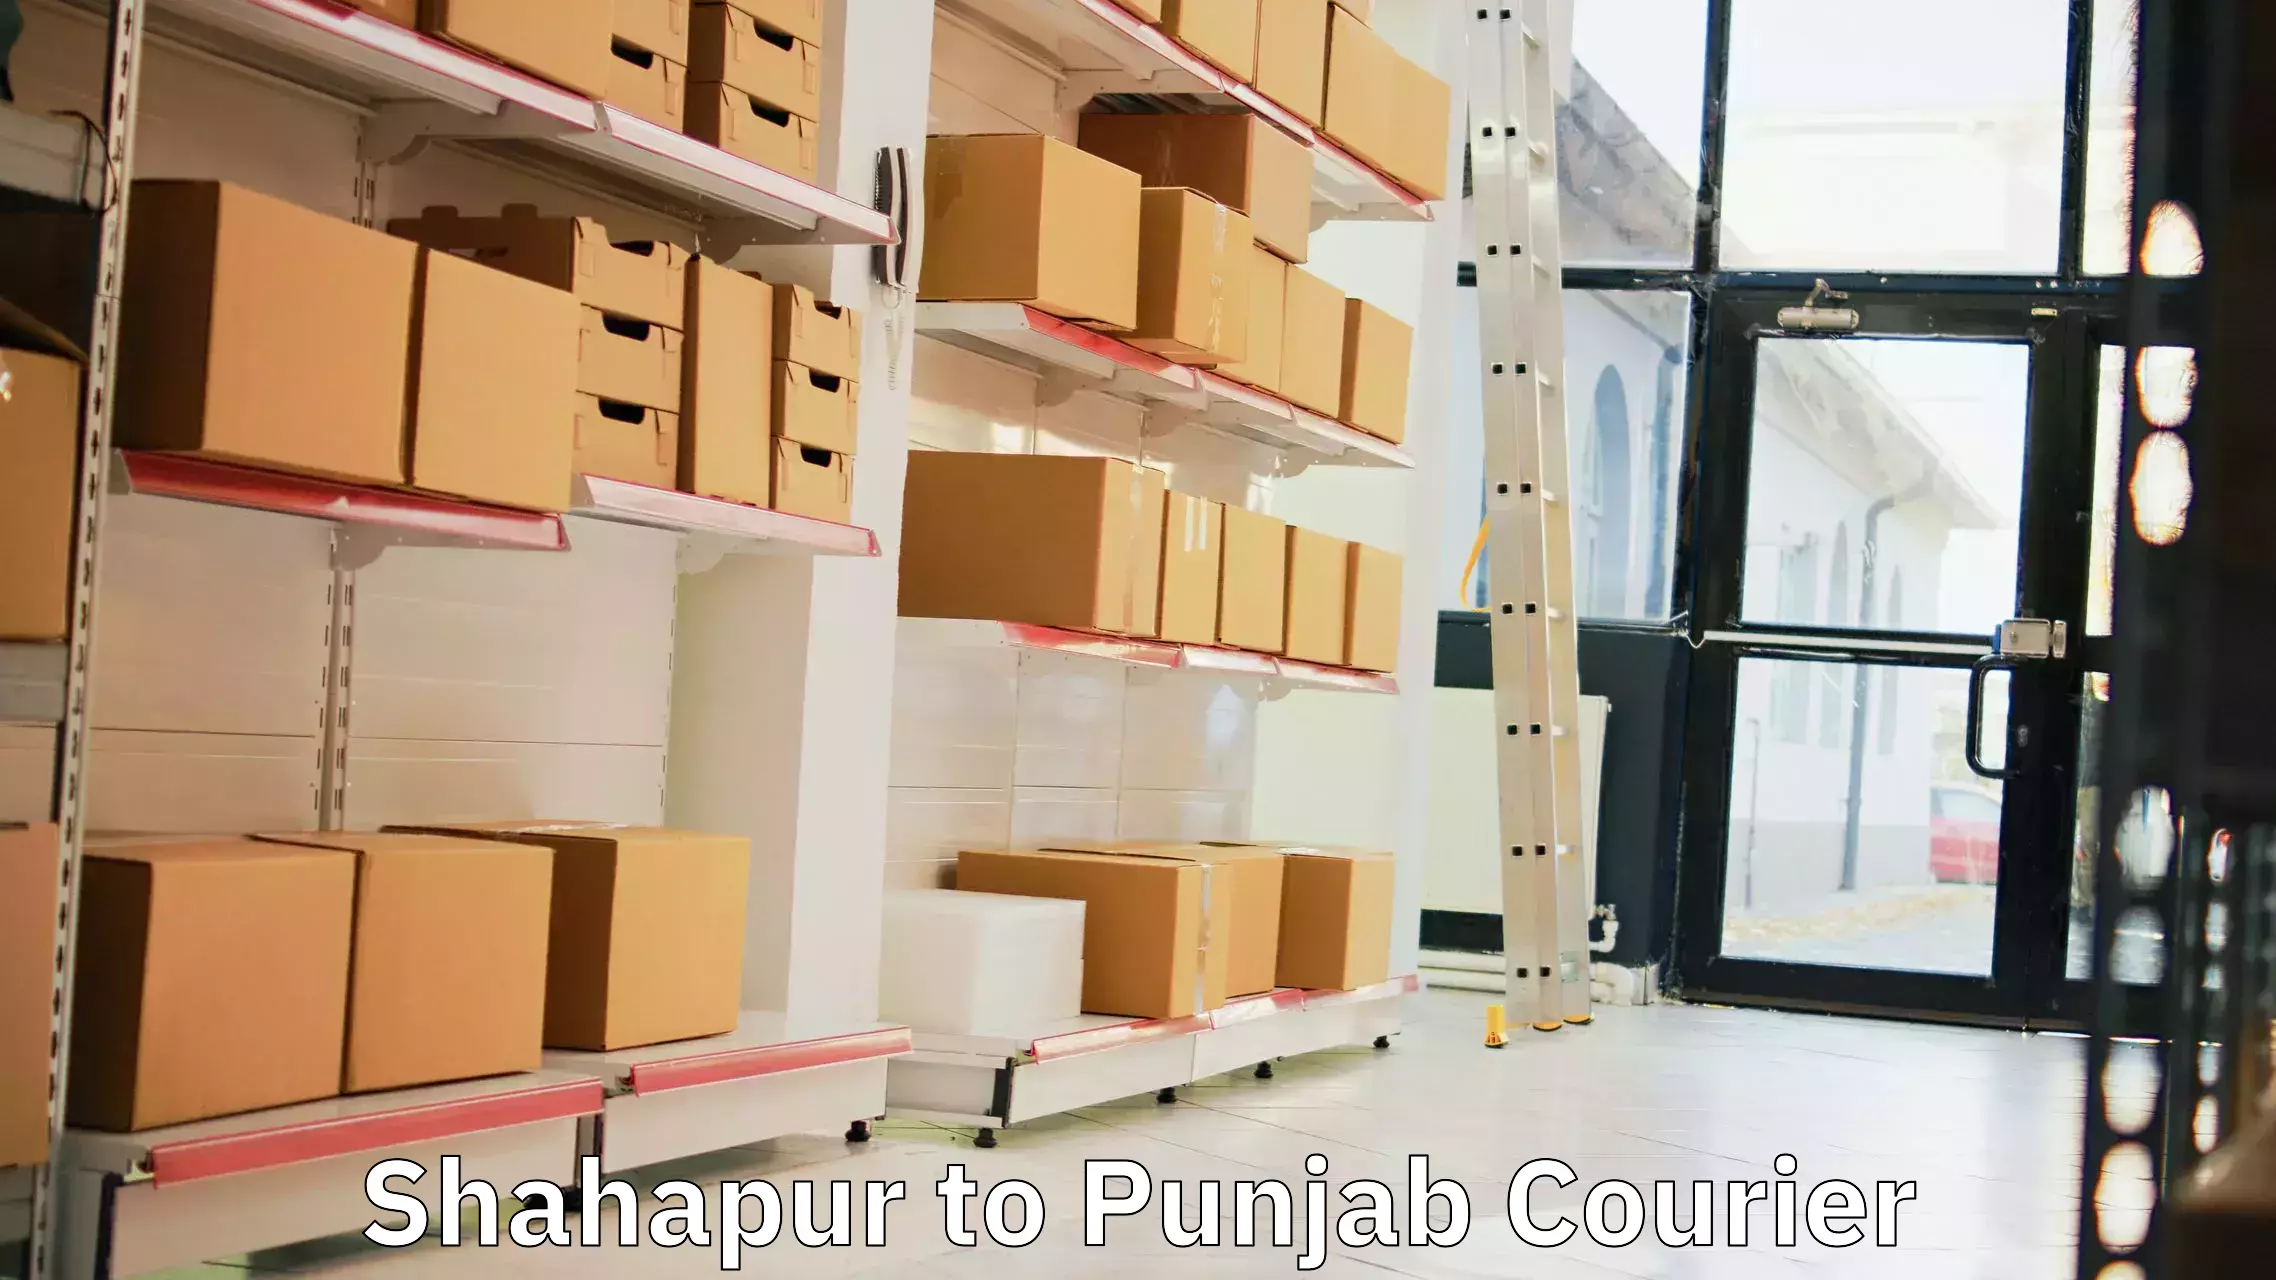 Courier dispatch services Shahapur to Garhshankar